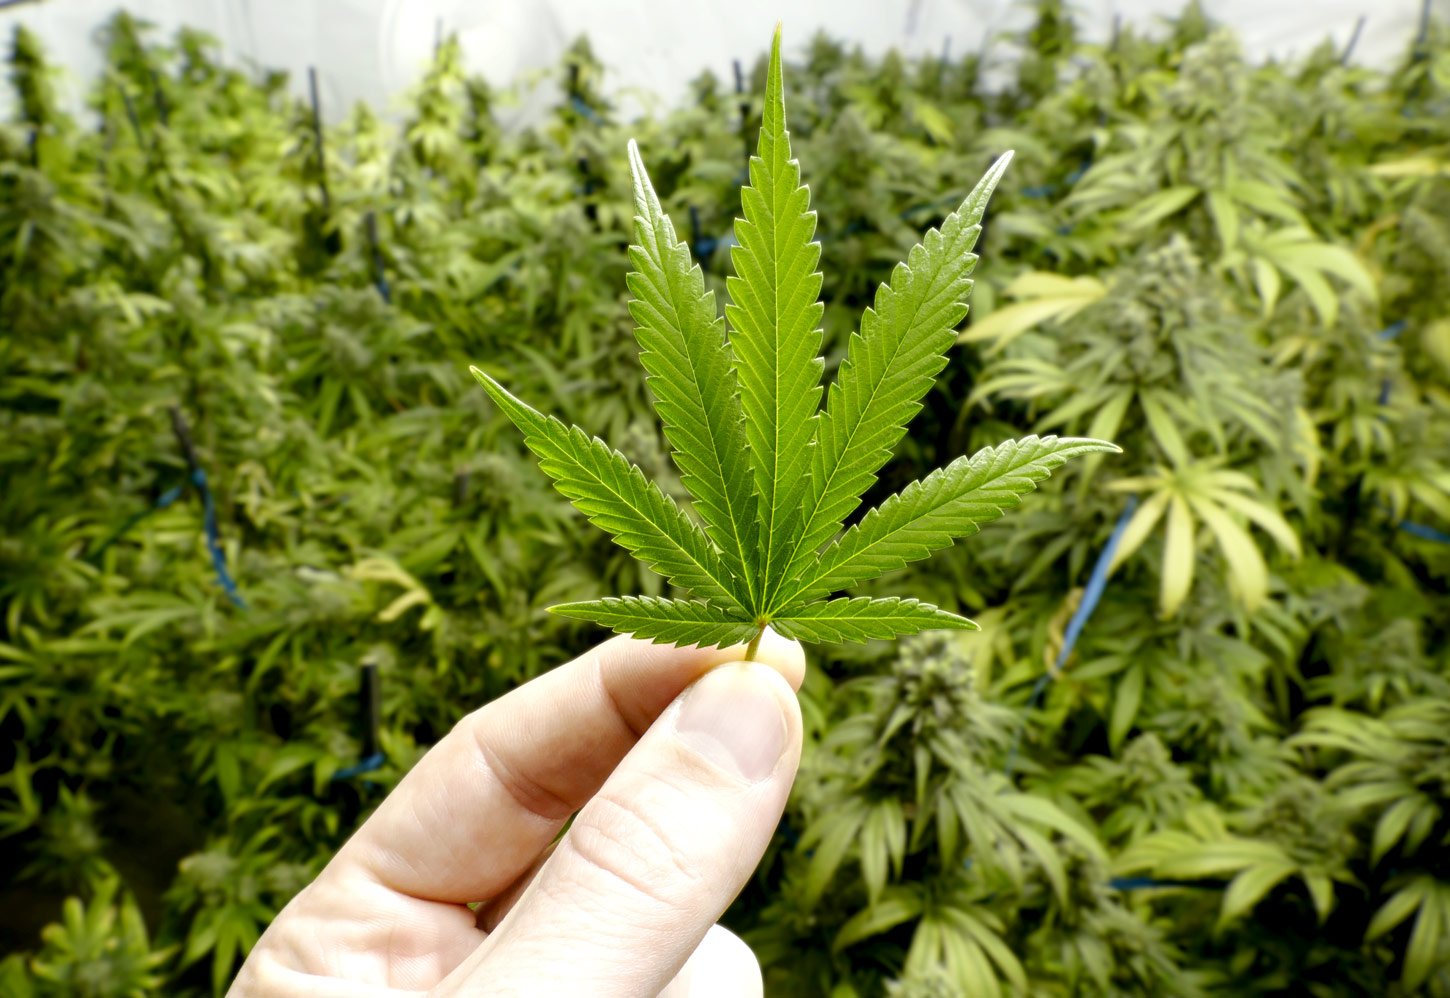 Studie gestartet: Covid-19 und Cannabiskonsum